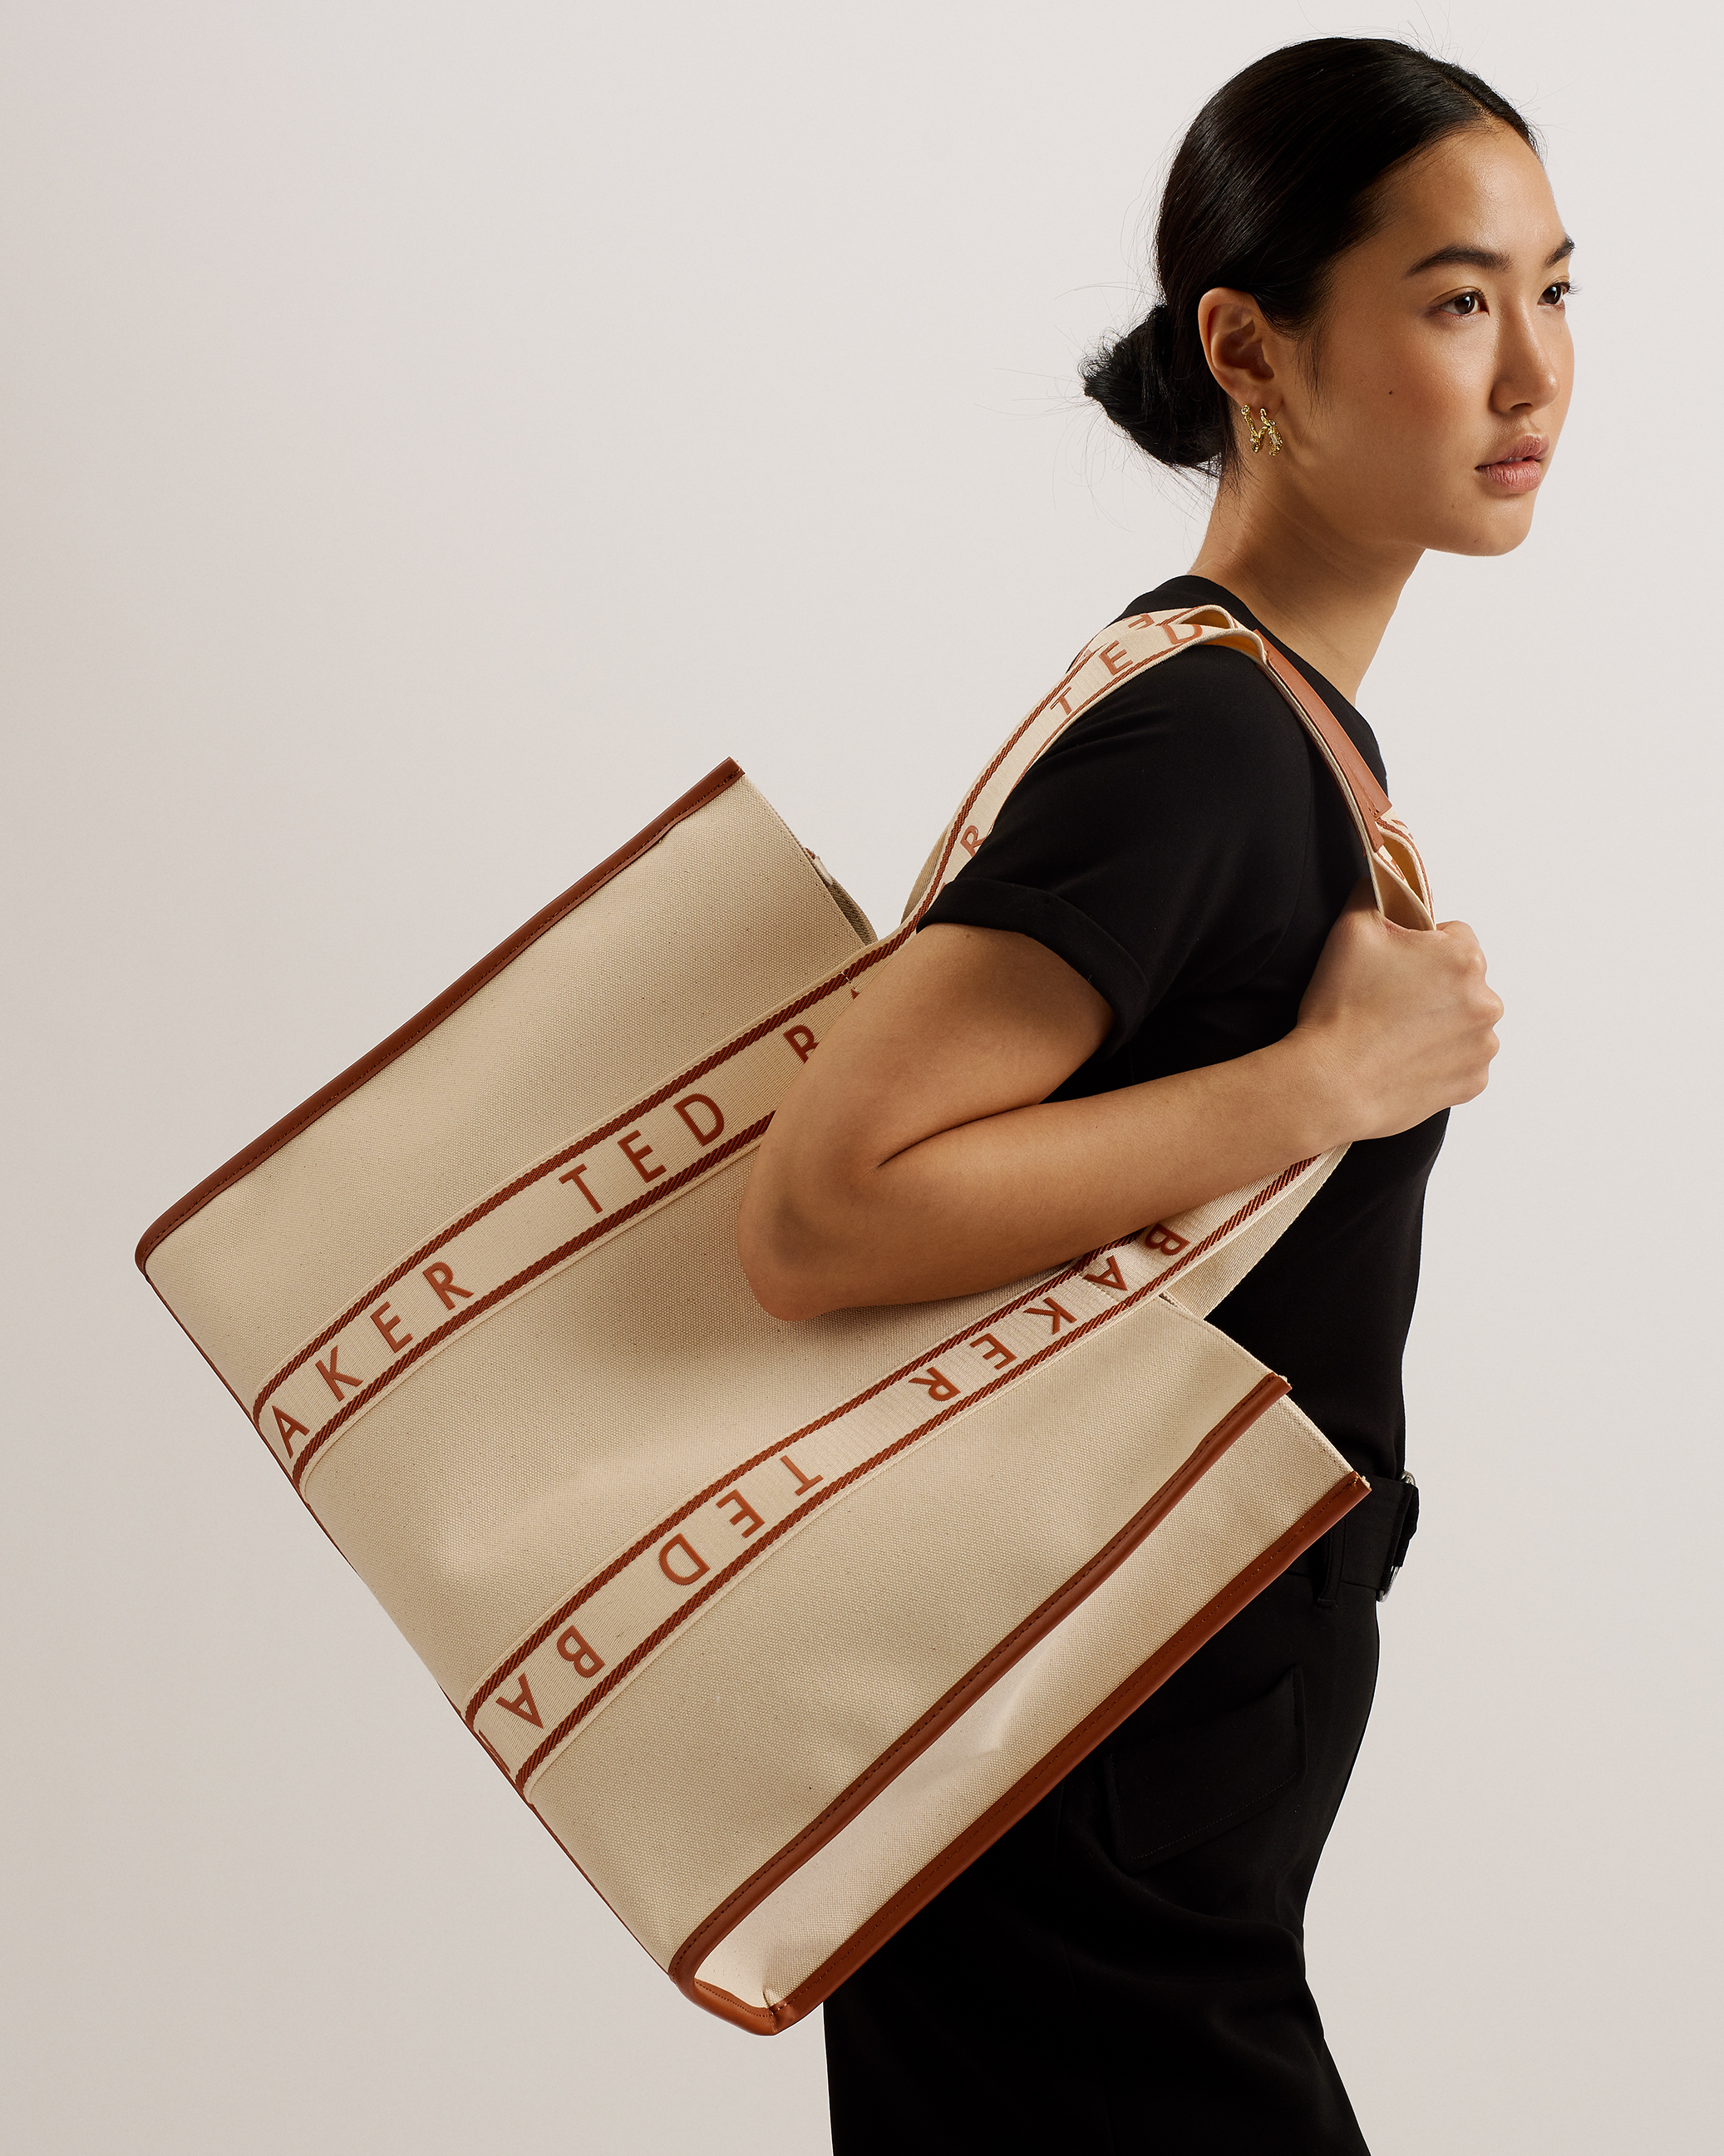 Handbags, Designer Bags, Women's Bags